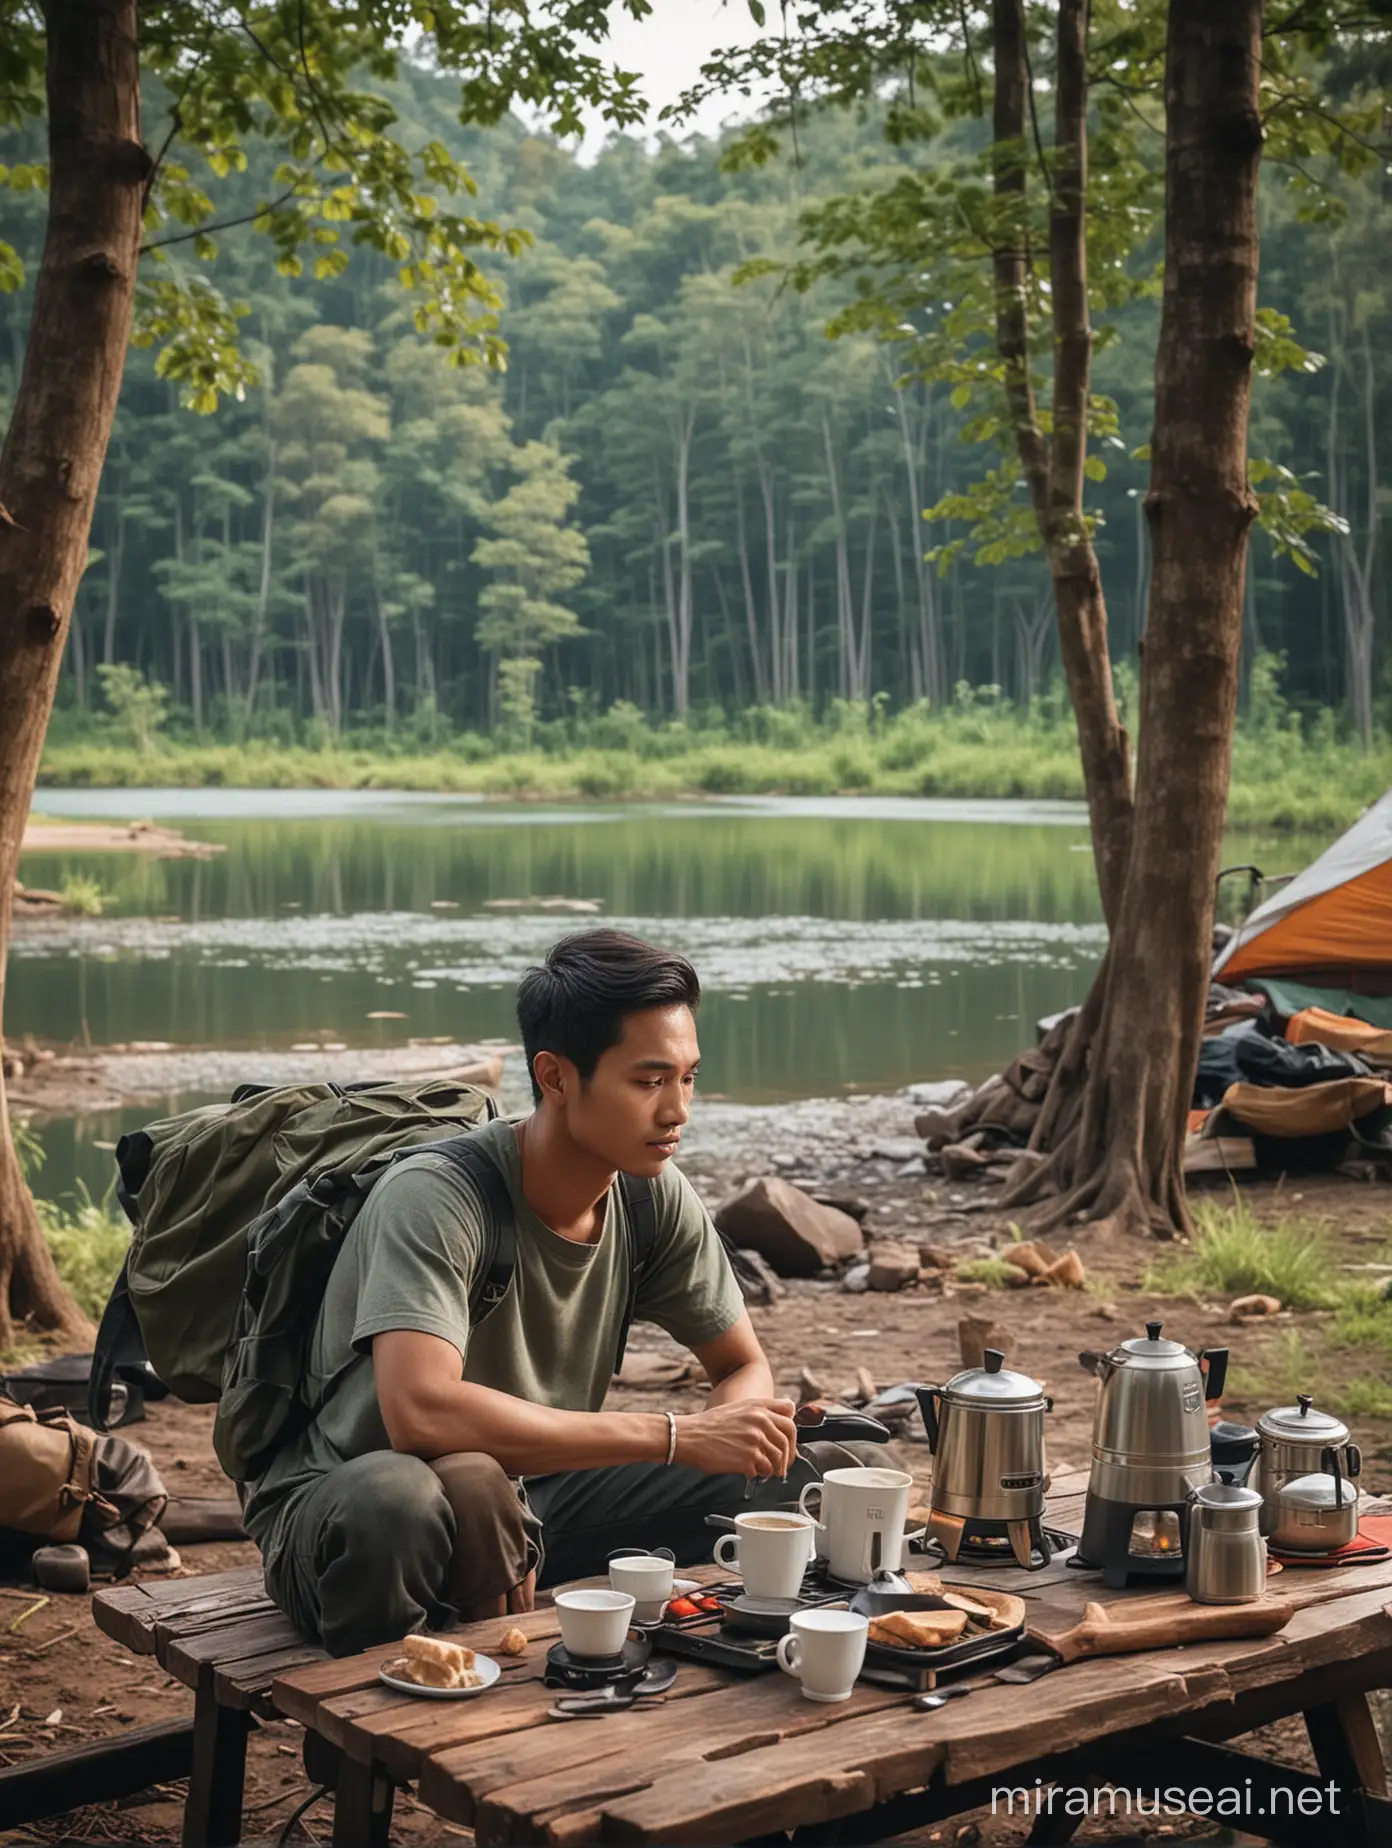 Seorang pemuda tampan dari indonesia,berambut pendek rapi belah samping,full body,sedang camping sambil duduk santai minum kopi,di depan ada meja dan kompor,dengan latar belakang danau dan di kelilingi hutan